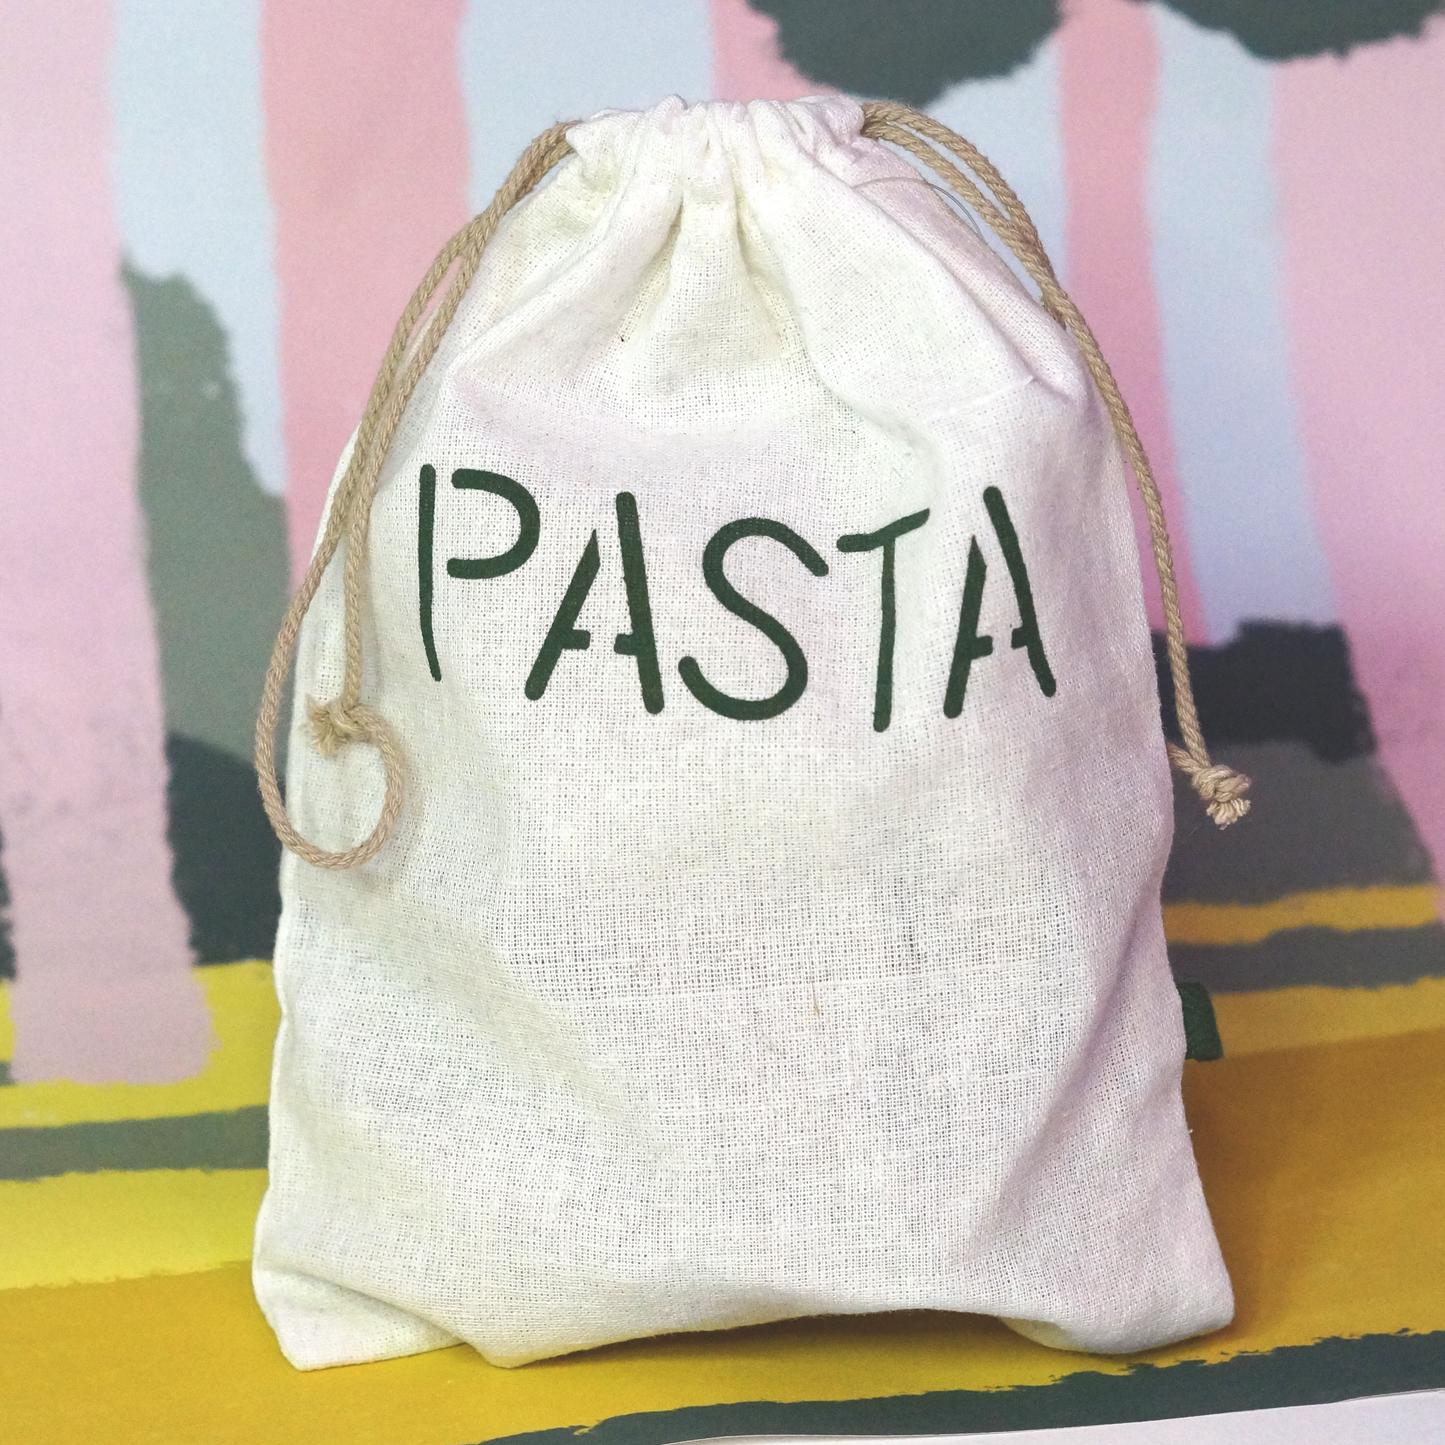 'Grain, Beans, Pasta' 3-Pack Reusable Cotton Bags